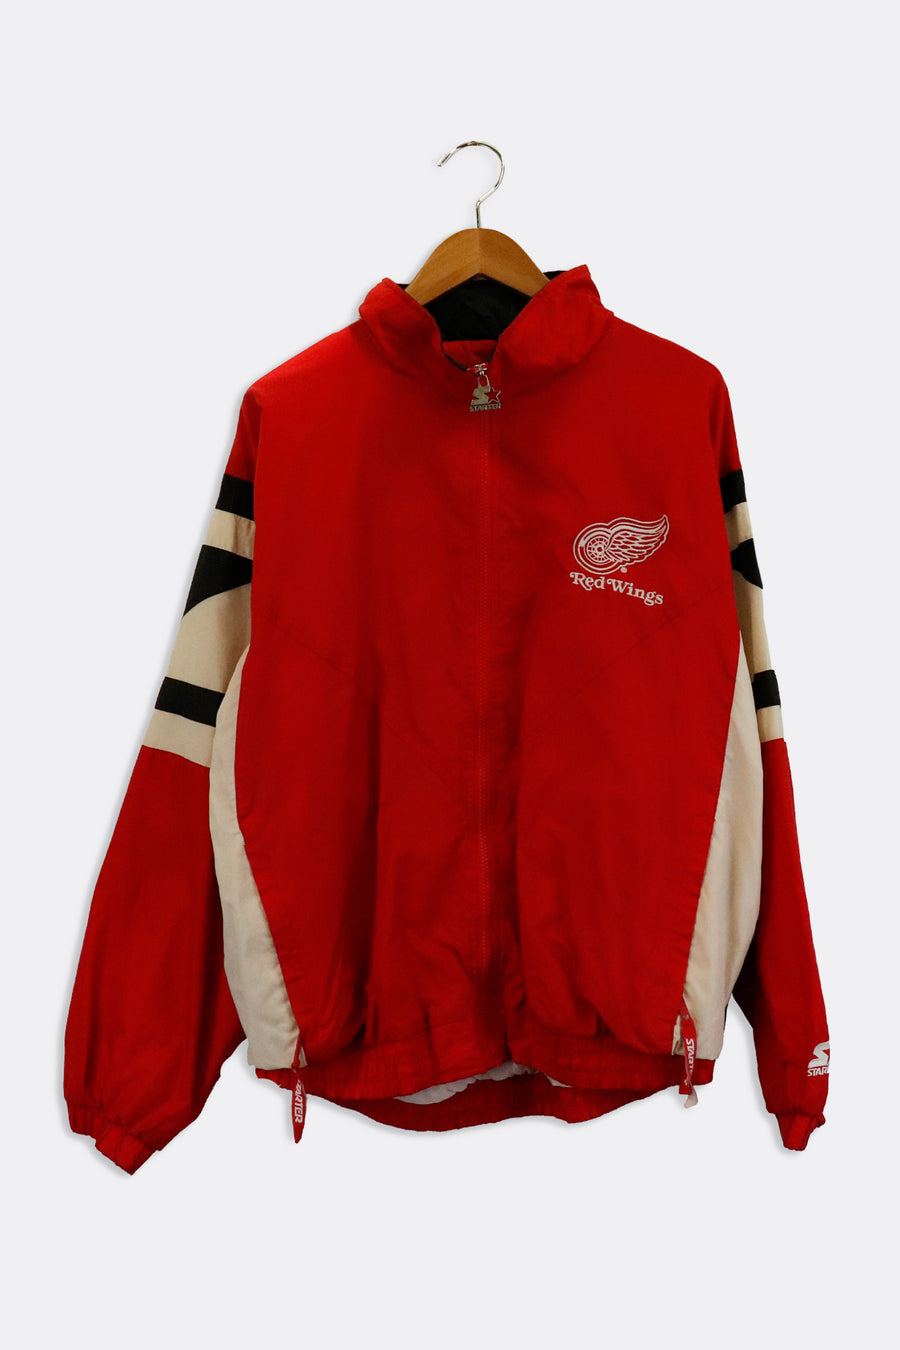 Vintage Starter NHL Detroit Red Wings Zip Up Jacket Sz L